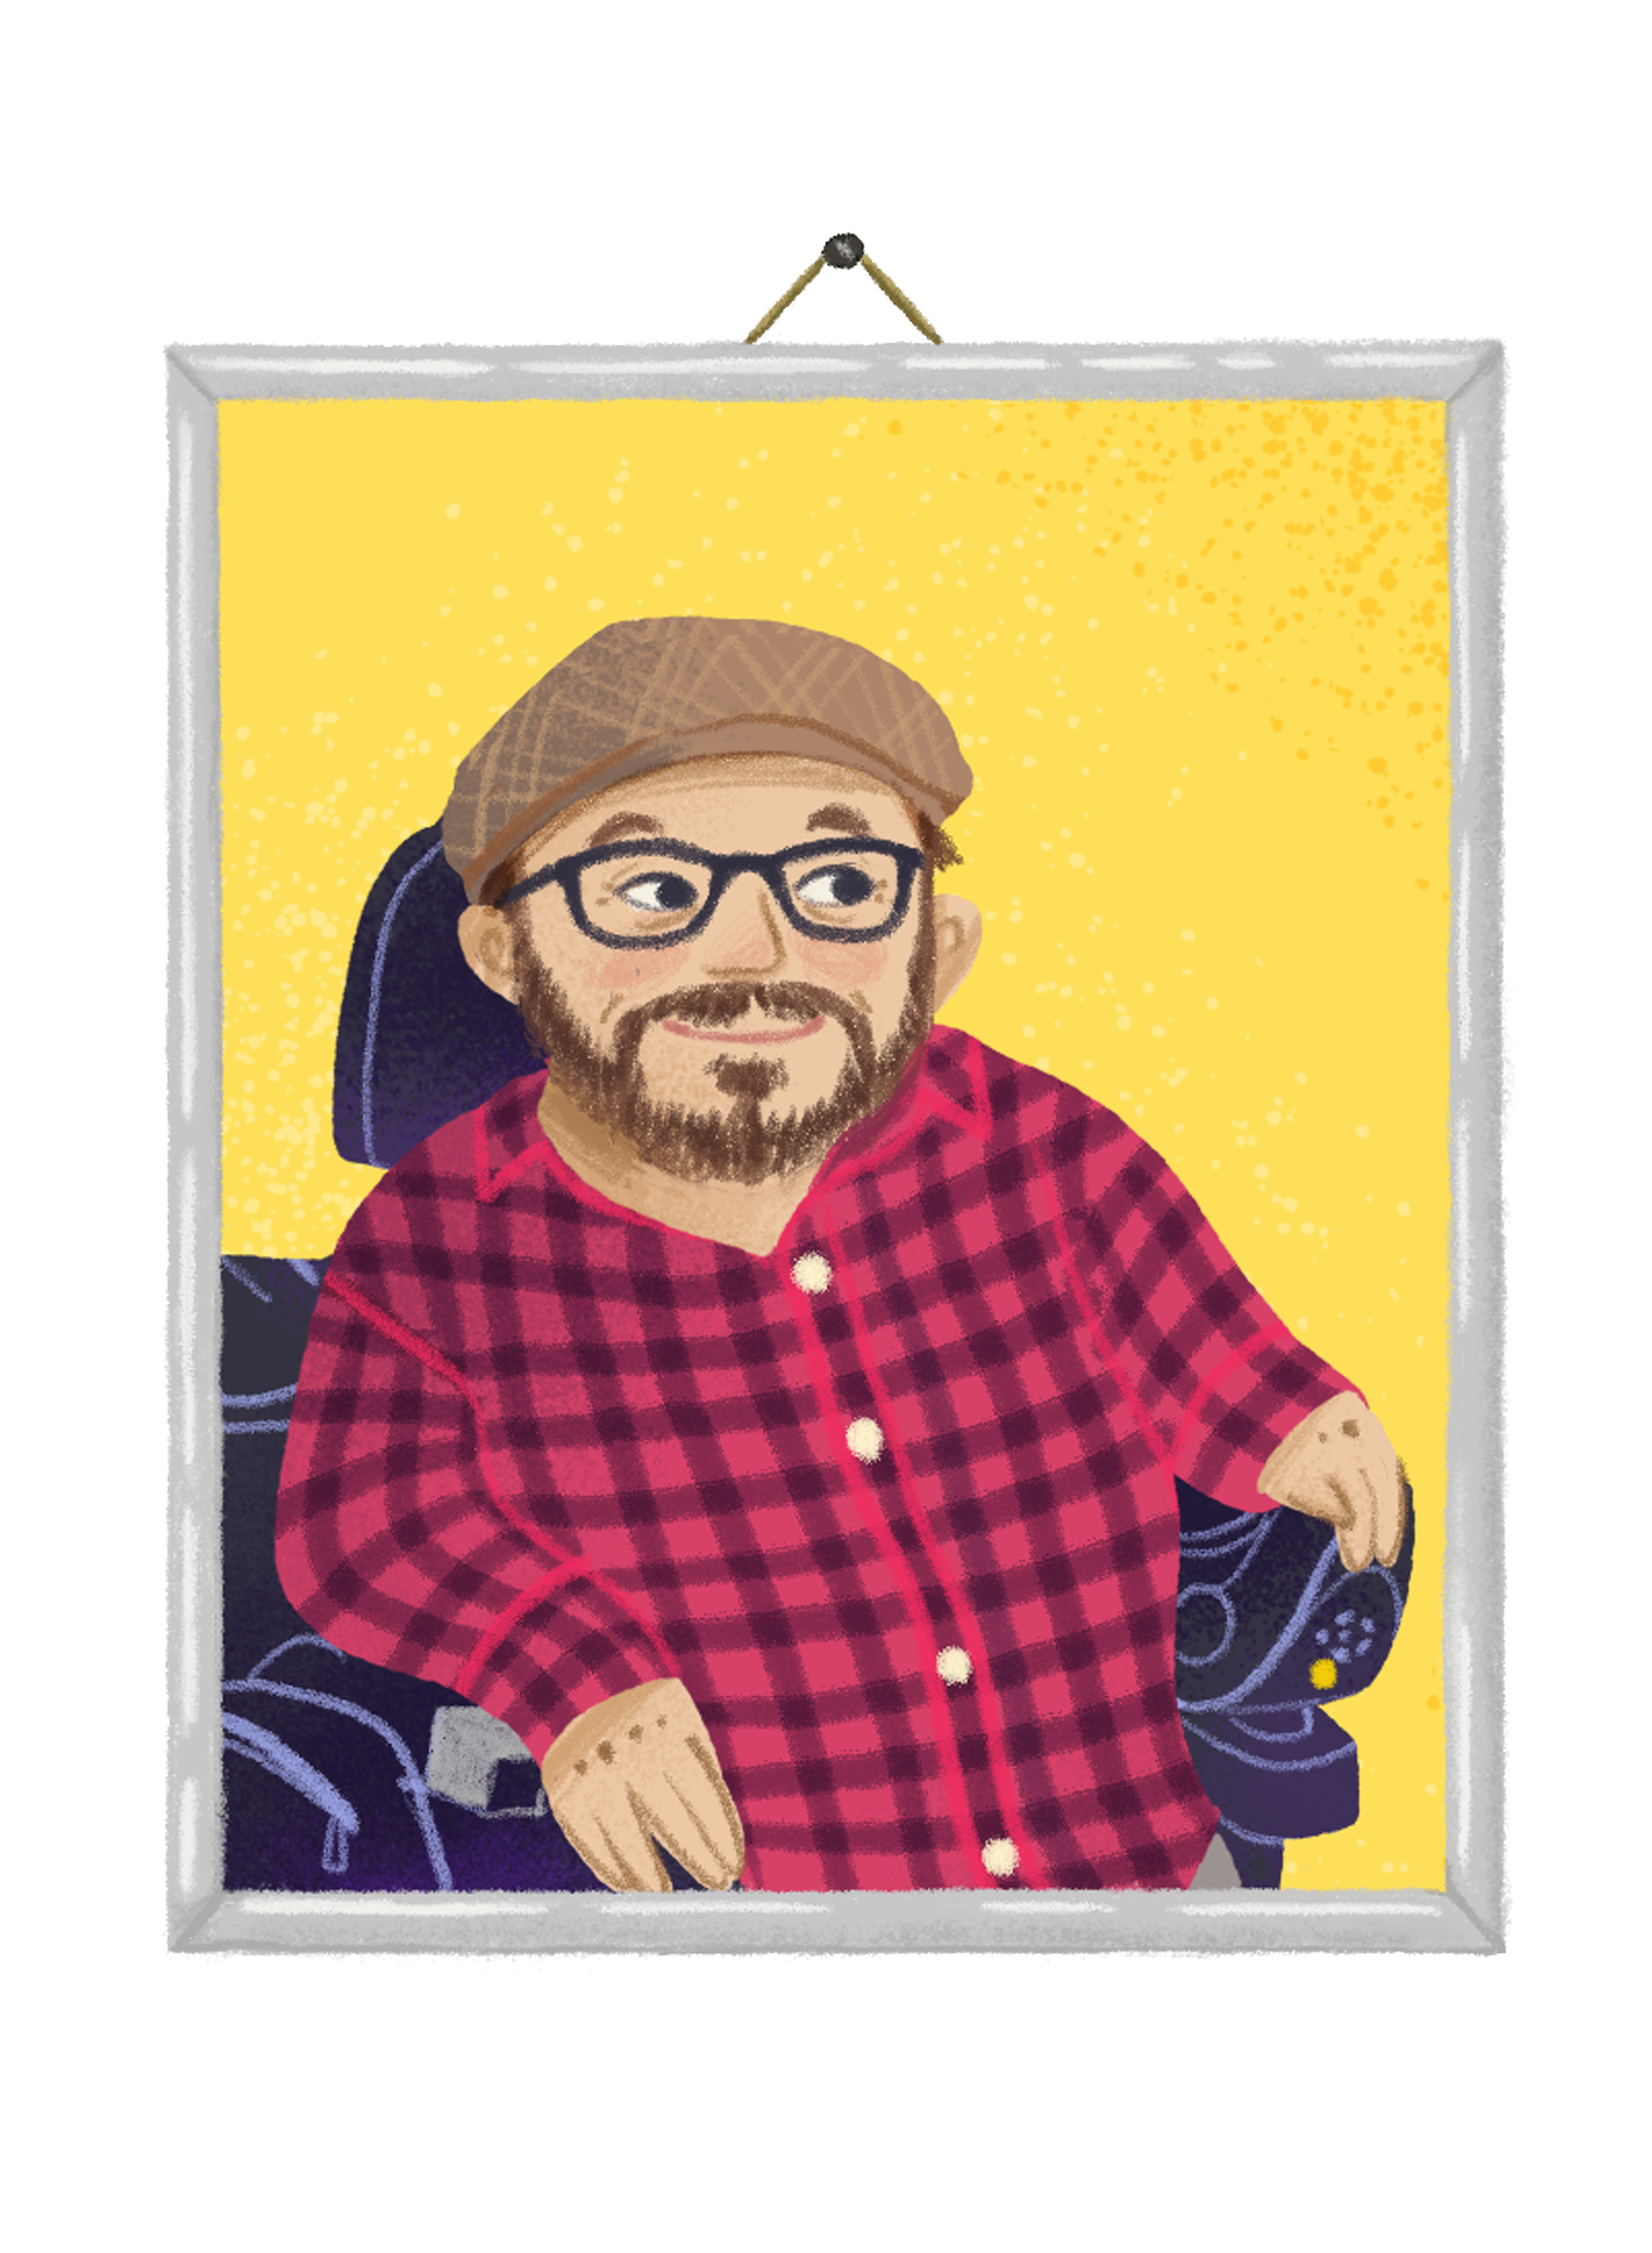 Das letzte Bild zeigt das Porträt von Raul Krauthausen mit Bart und Brille, der ein kariertes Hemd trägt und in einem Rollstuhl sitzt. Der Hintergrund ist gelb mit einem Sprüh-Effekt, und das Bild scheint an einer Wand aufgehängt zu sein.